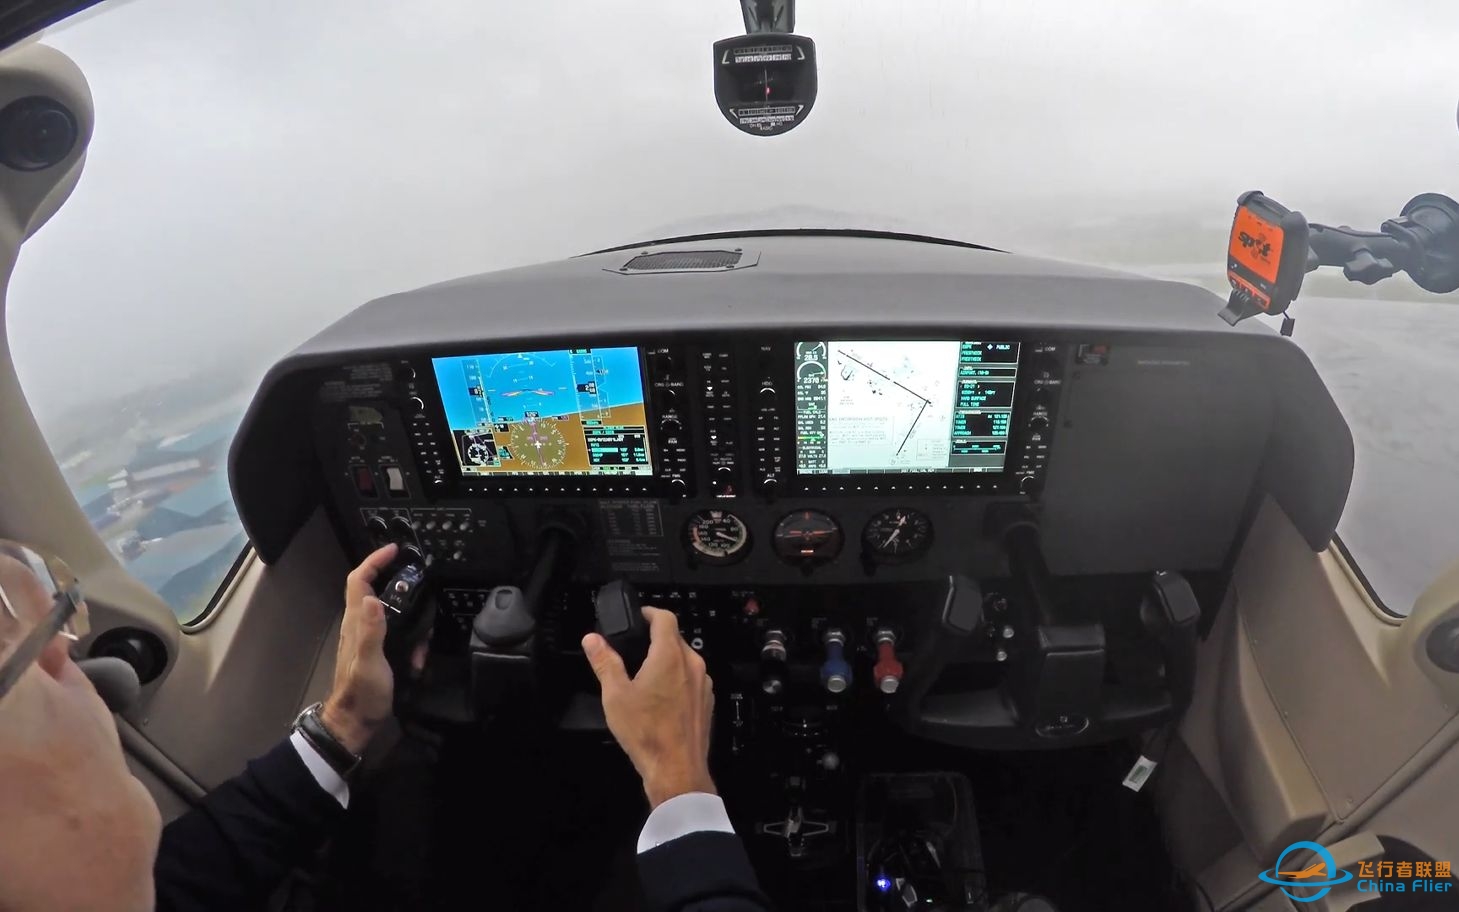 【第一视角飞行】塞斯纳Cessna 182T - 恶劣天气下起降飞行-976 